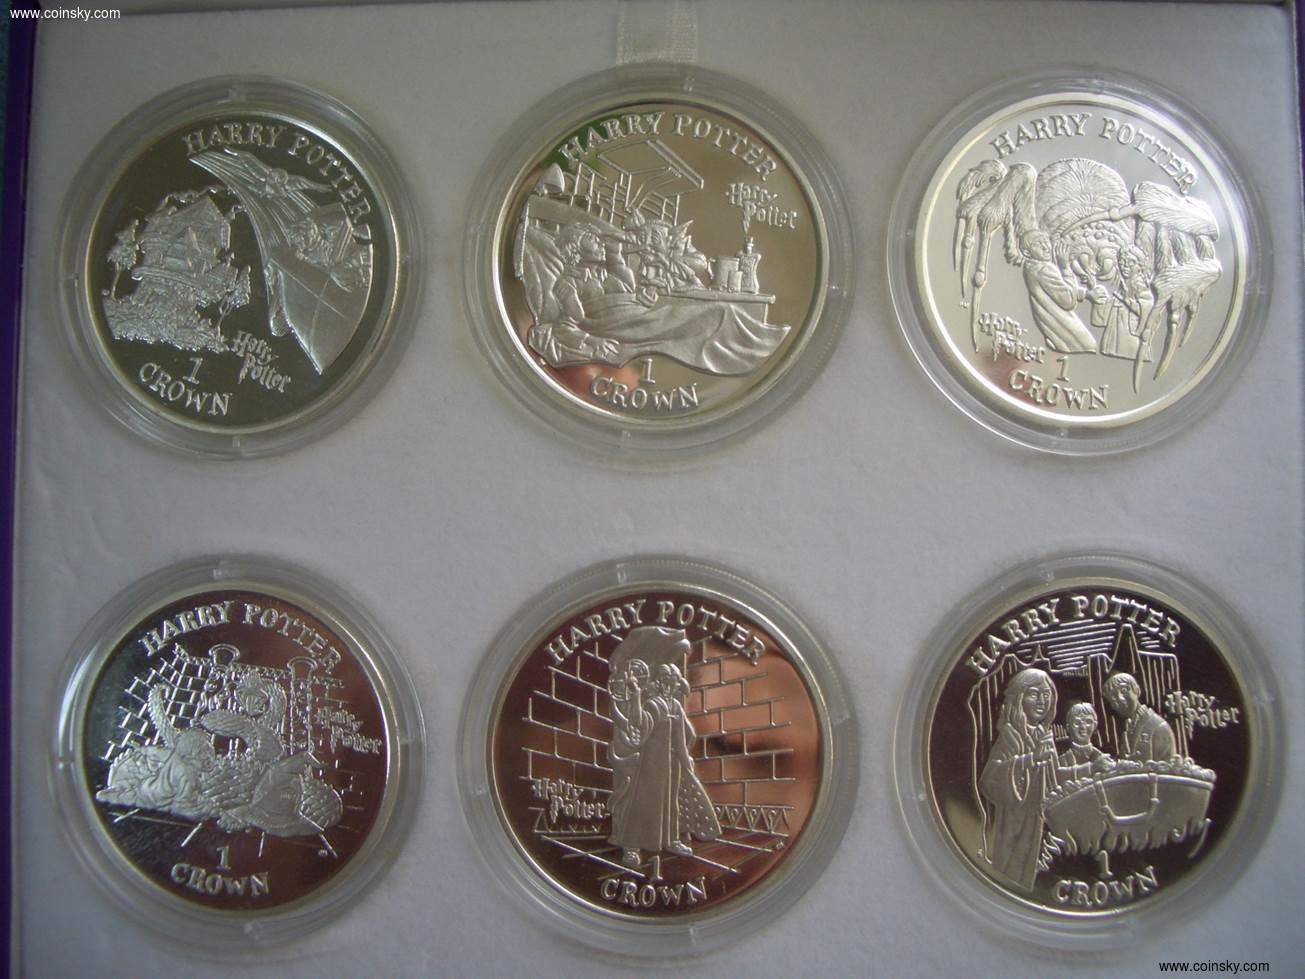 钱币天堂--钱币商城--现代铸币研究--查看马恩岛